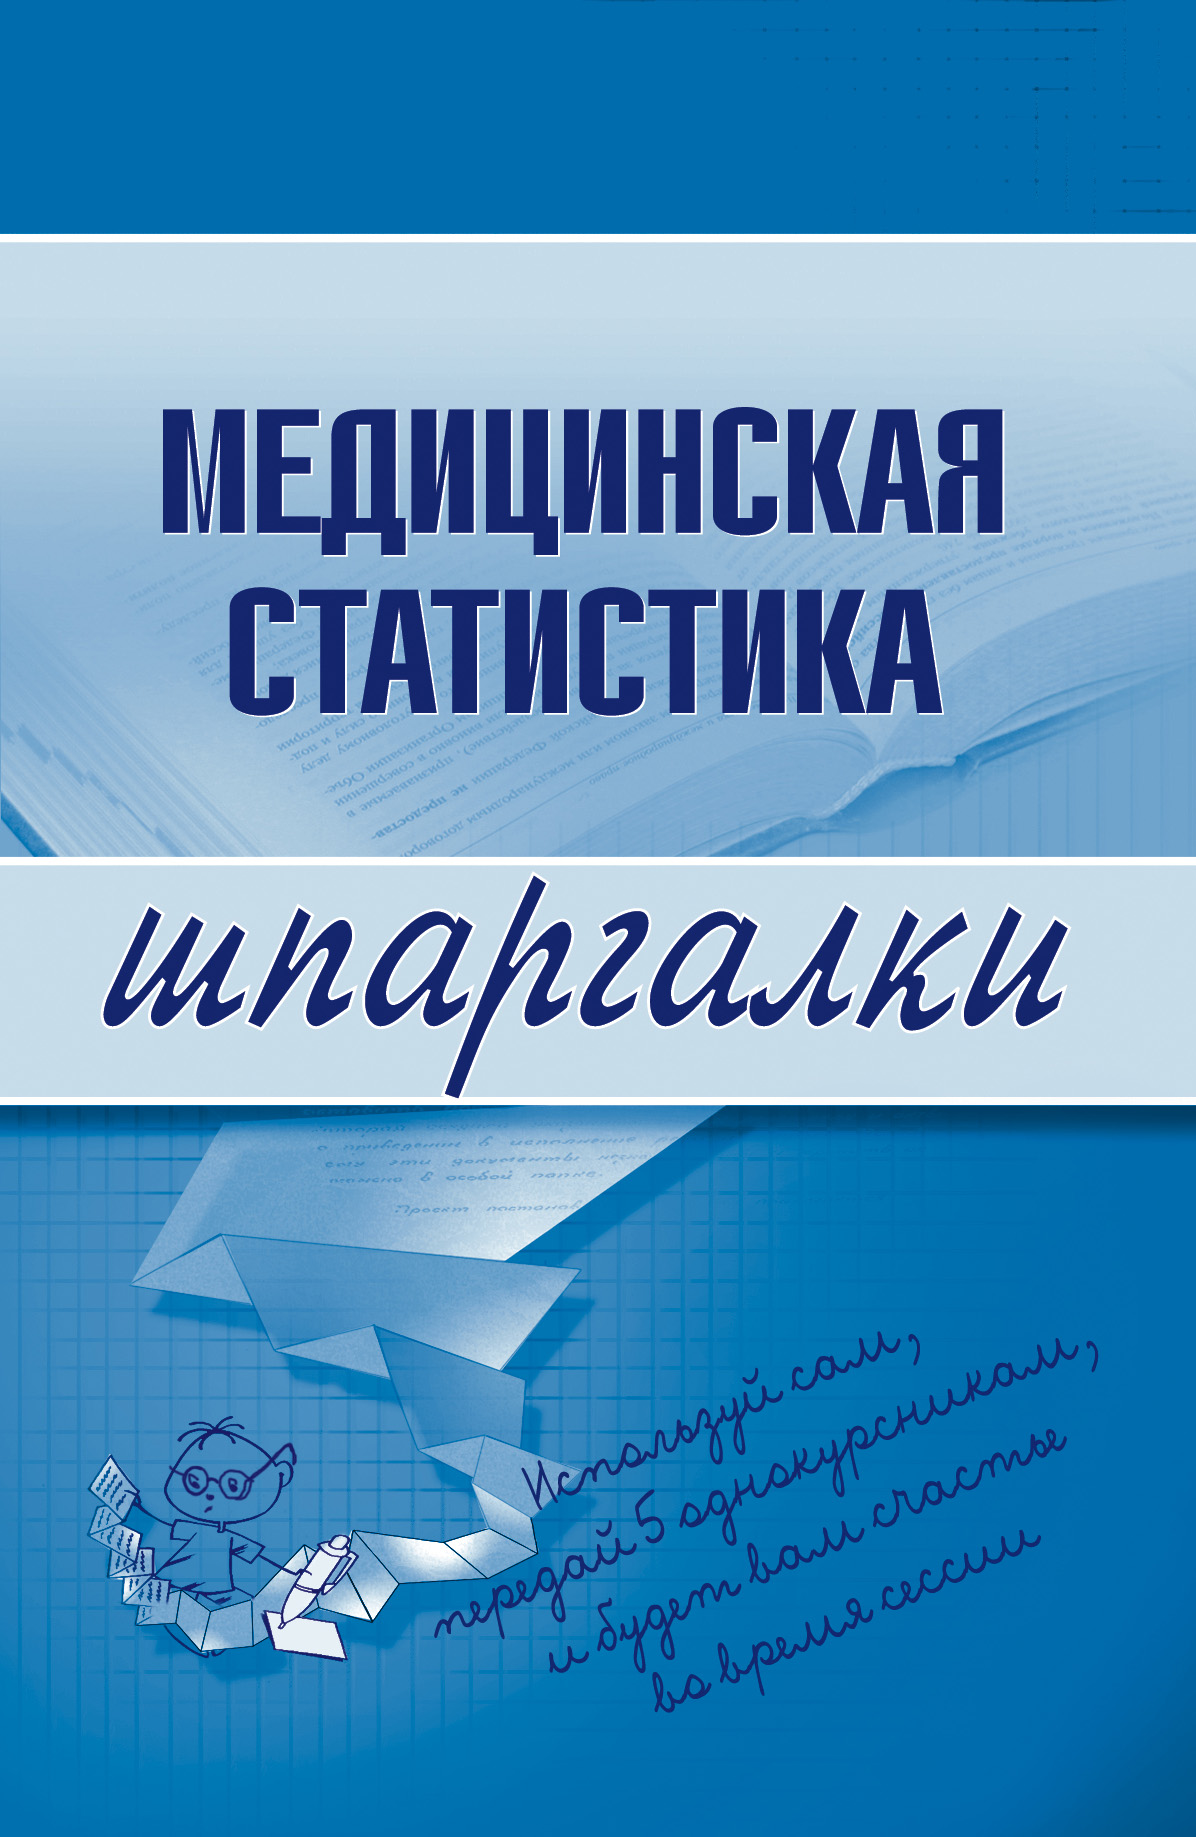 Книга Медицинская статистика из серии Шпаргалки, созданная Ольга Жидкова, может относится к жанру Медицина. Стоимость книги Медицинская статистика  с идентификатором 179751 составляет 39.98 руб.